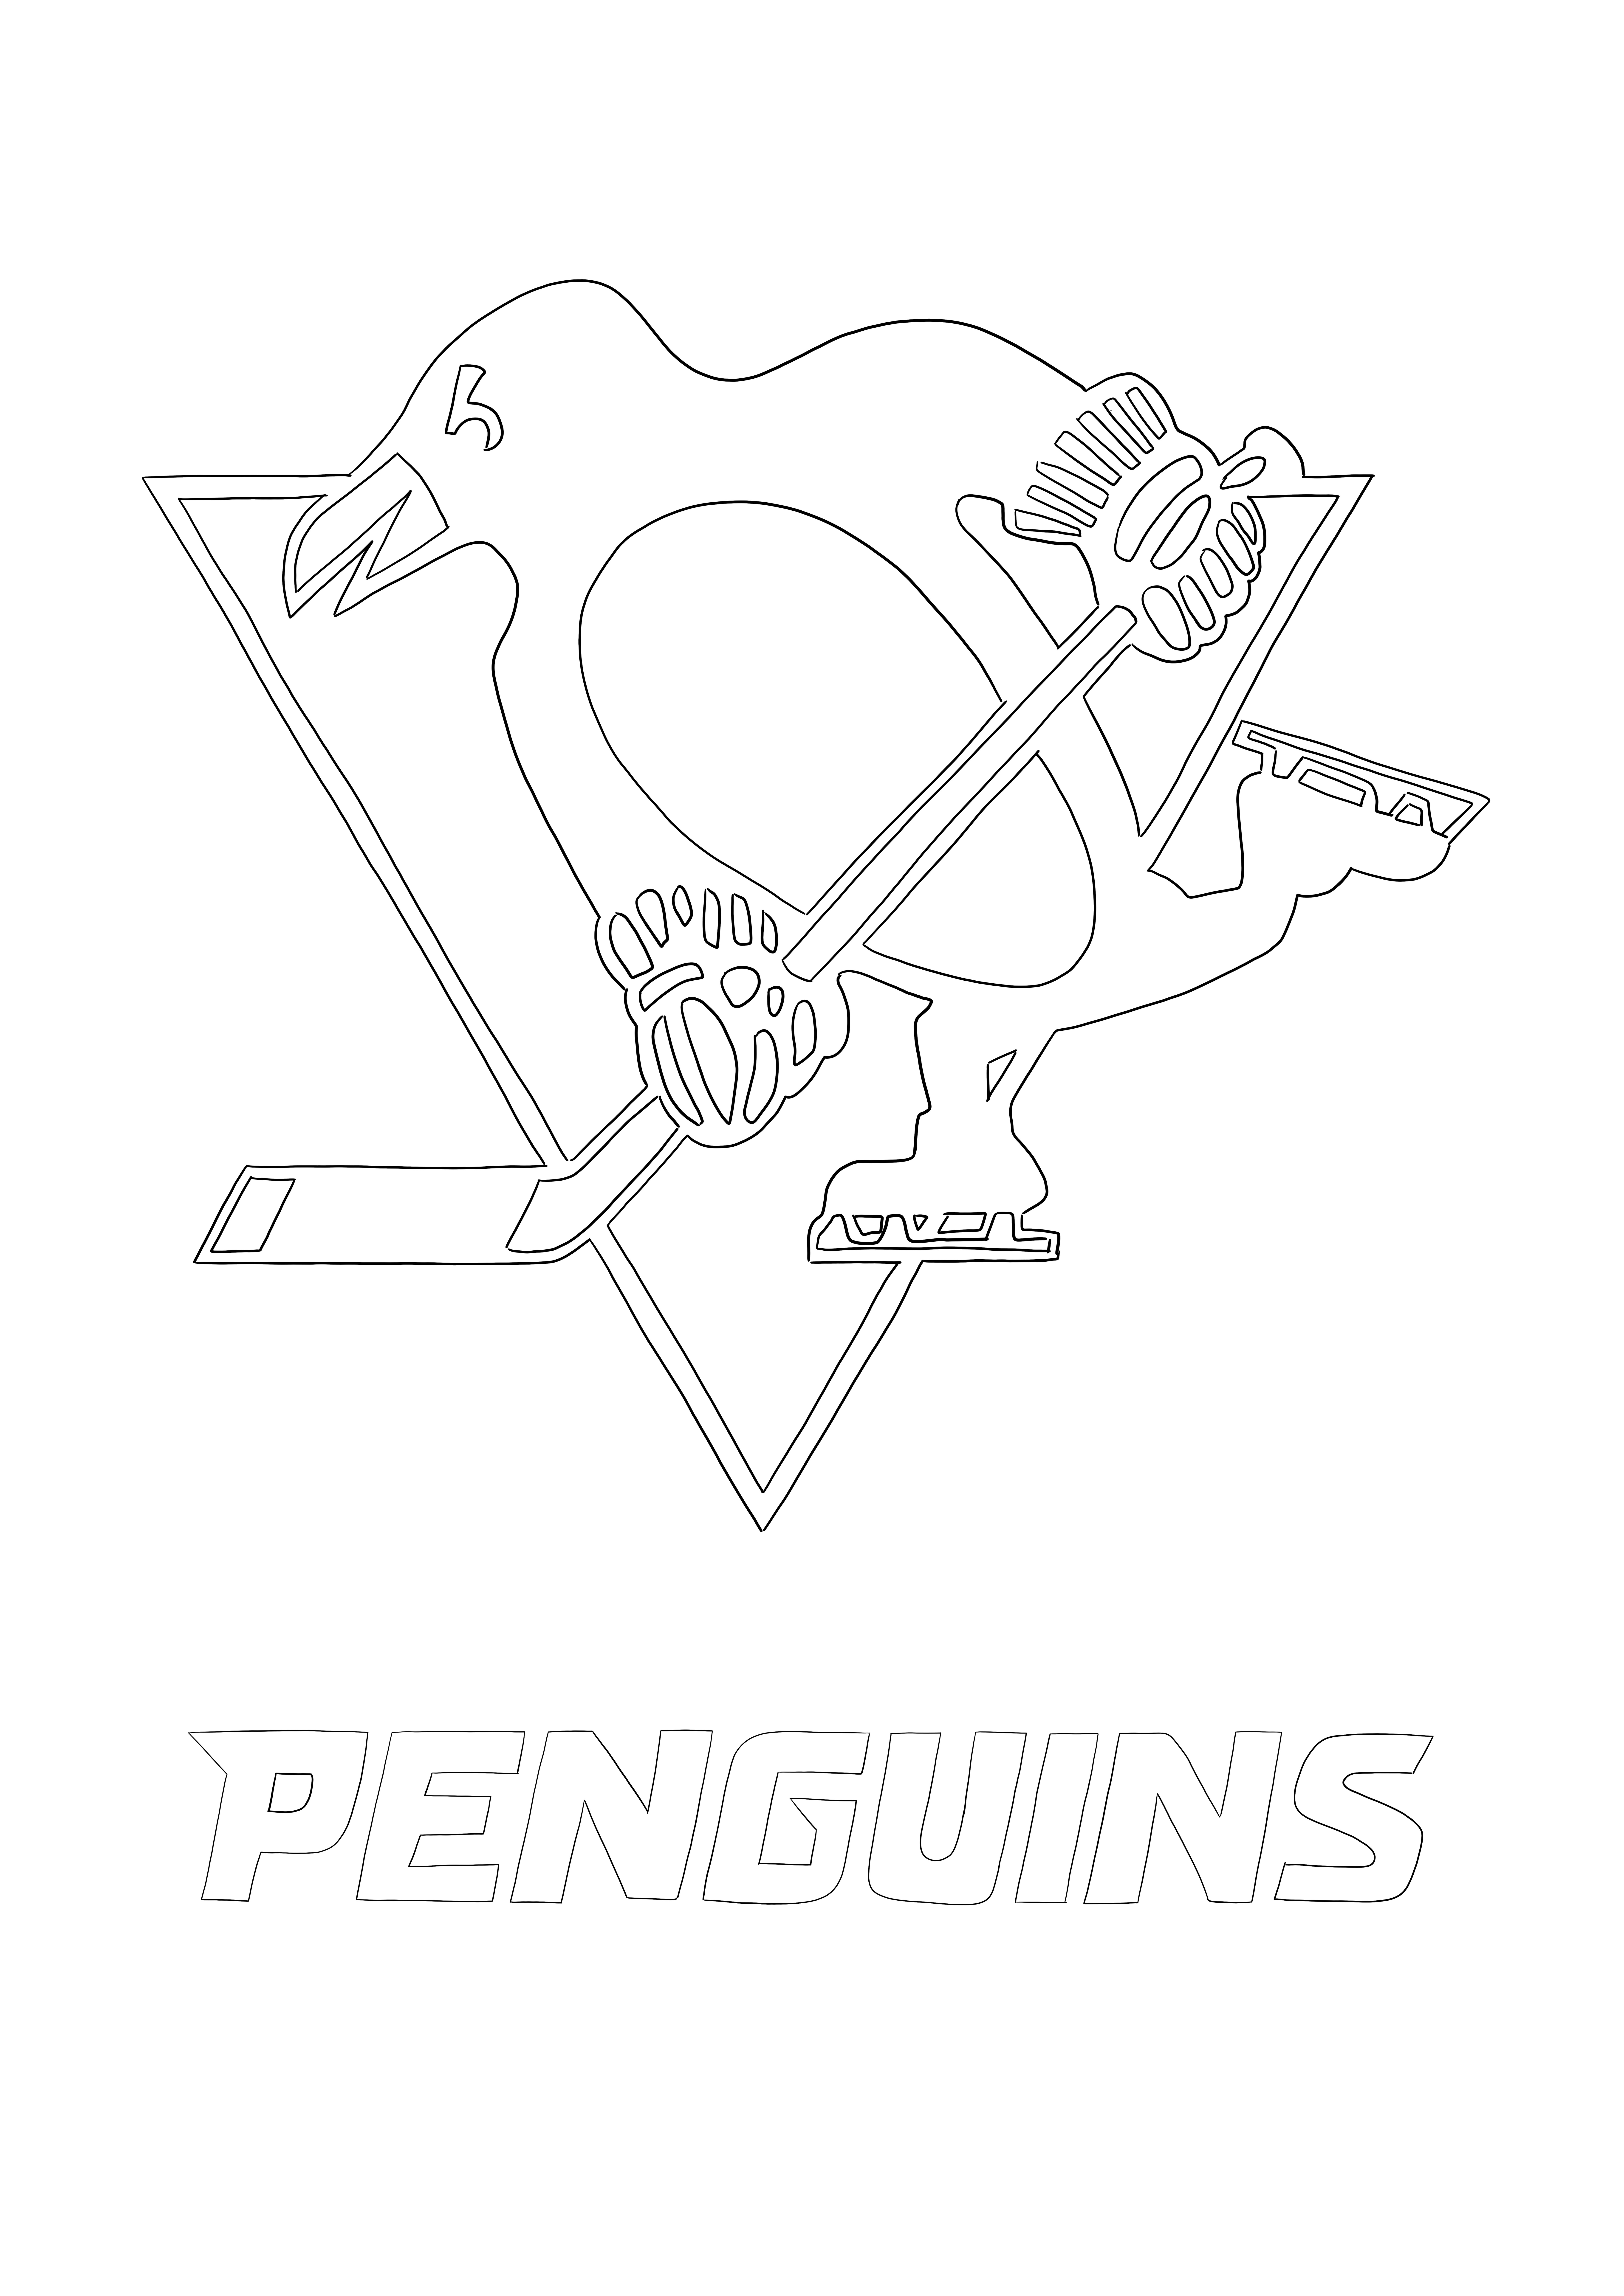 Pittsburgh Penguins Logo gambar gratis untuk diunduh dan diwarnai untuk anak-anak